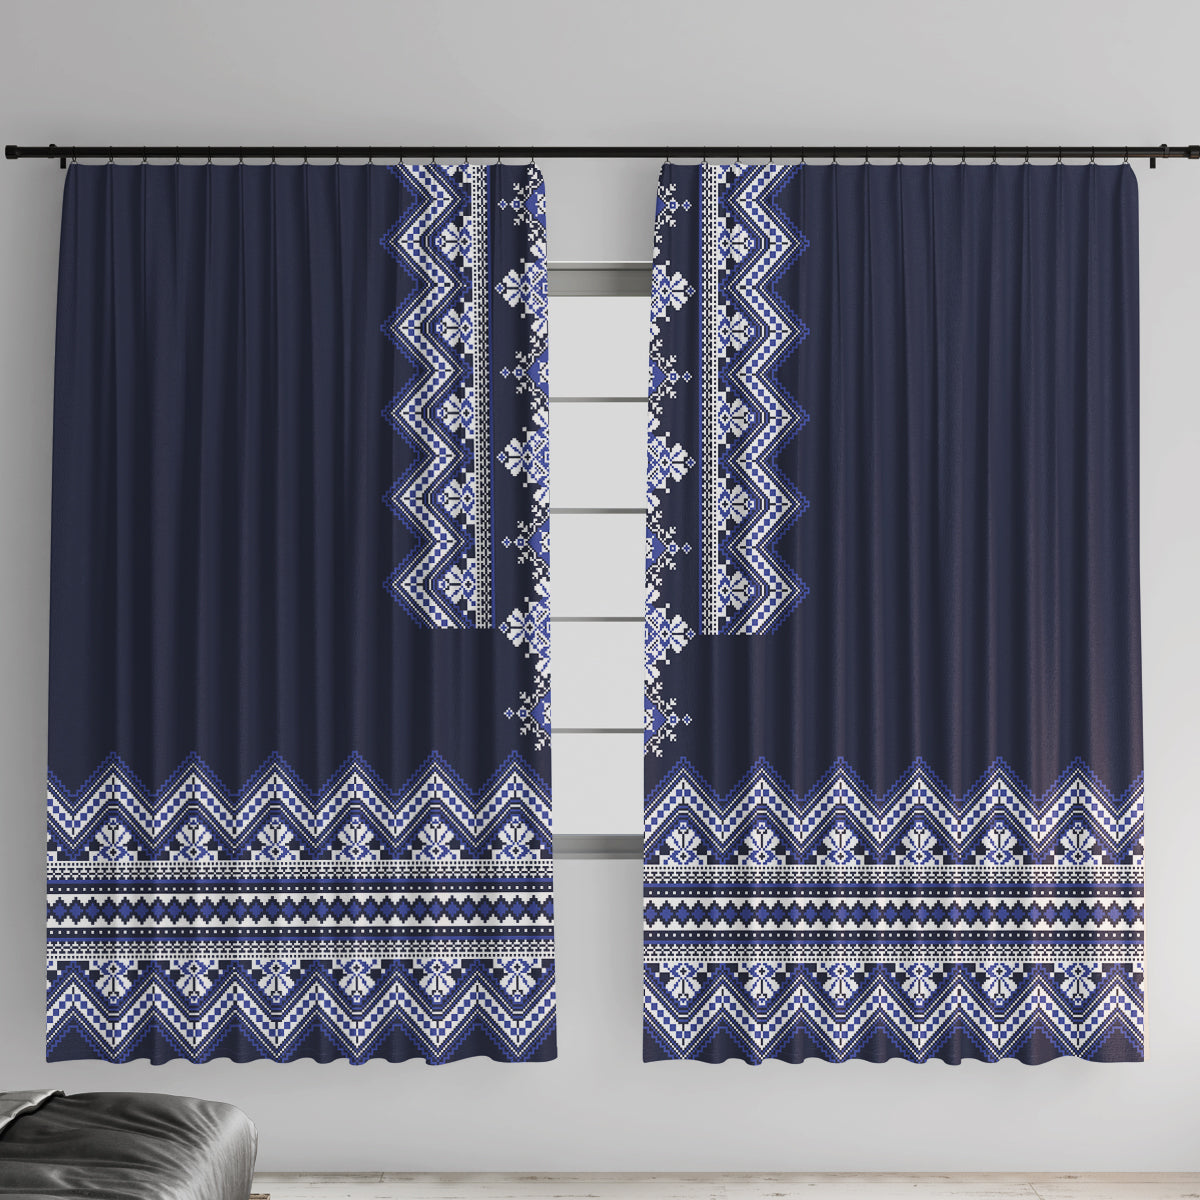 ukraine-folk-pattern-window-curtain-ukrainian-navy-blue-version